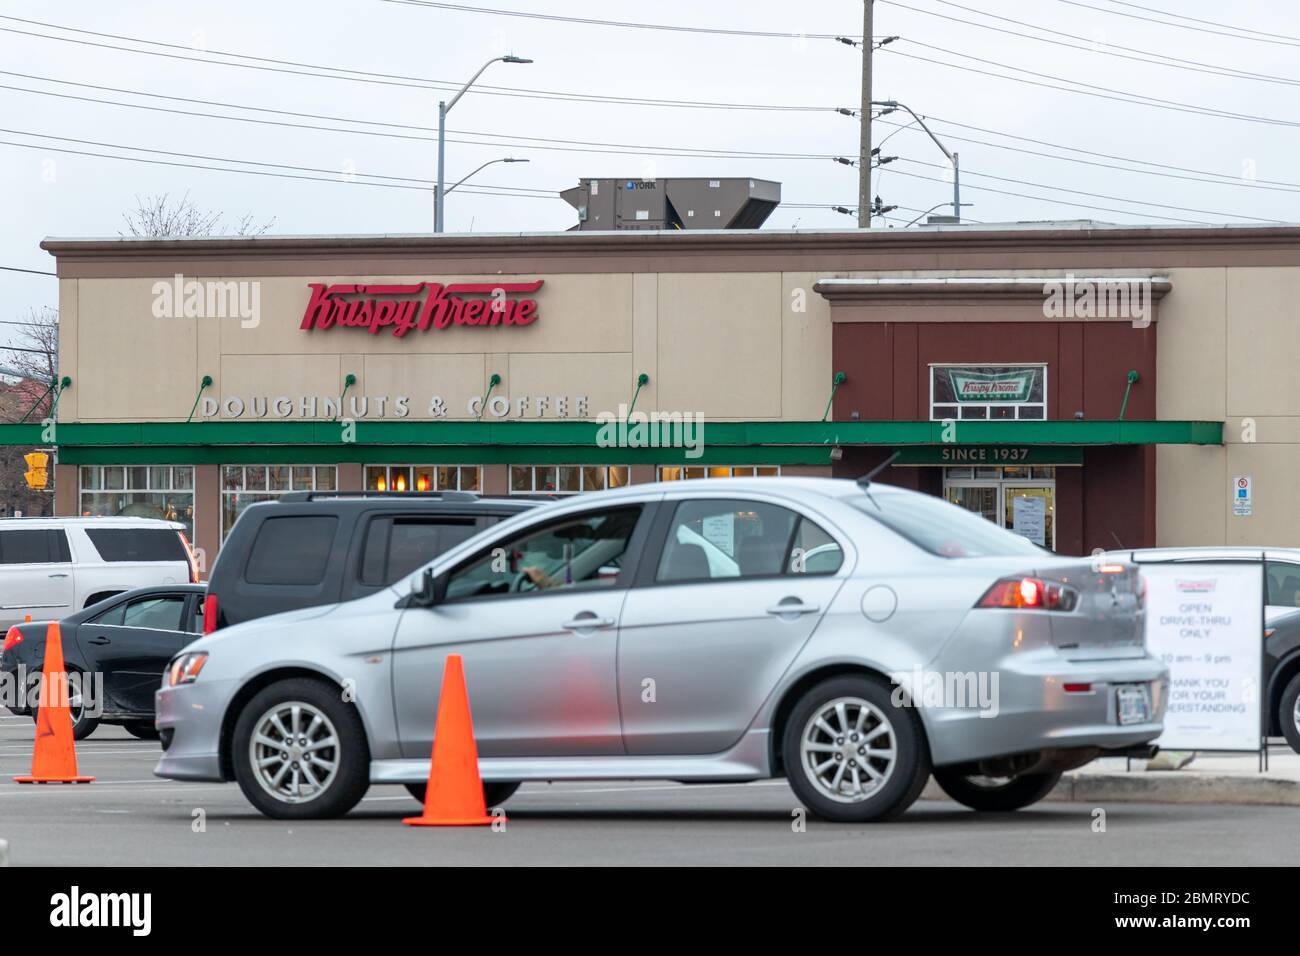 Krispy Kreme Donuts & Coffee Shop con coches en un frente en una gran fila esperando a recoger en medio de la pandemia global COVID-19. Foto de stock